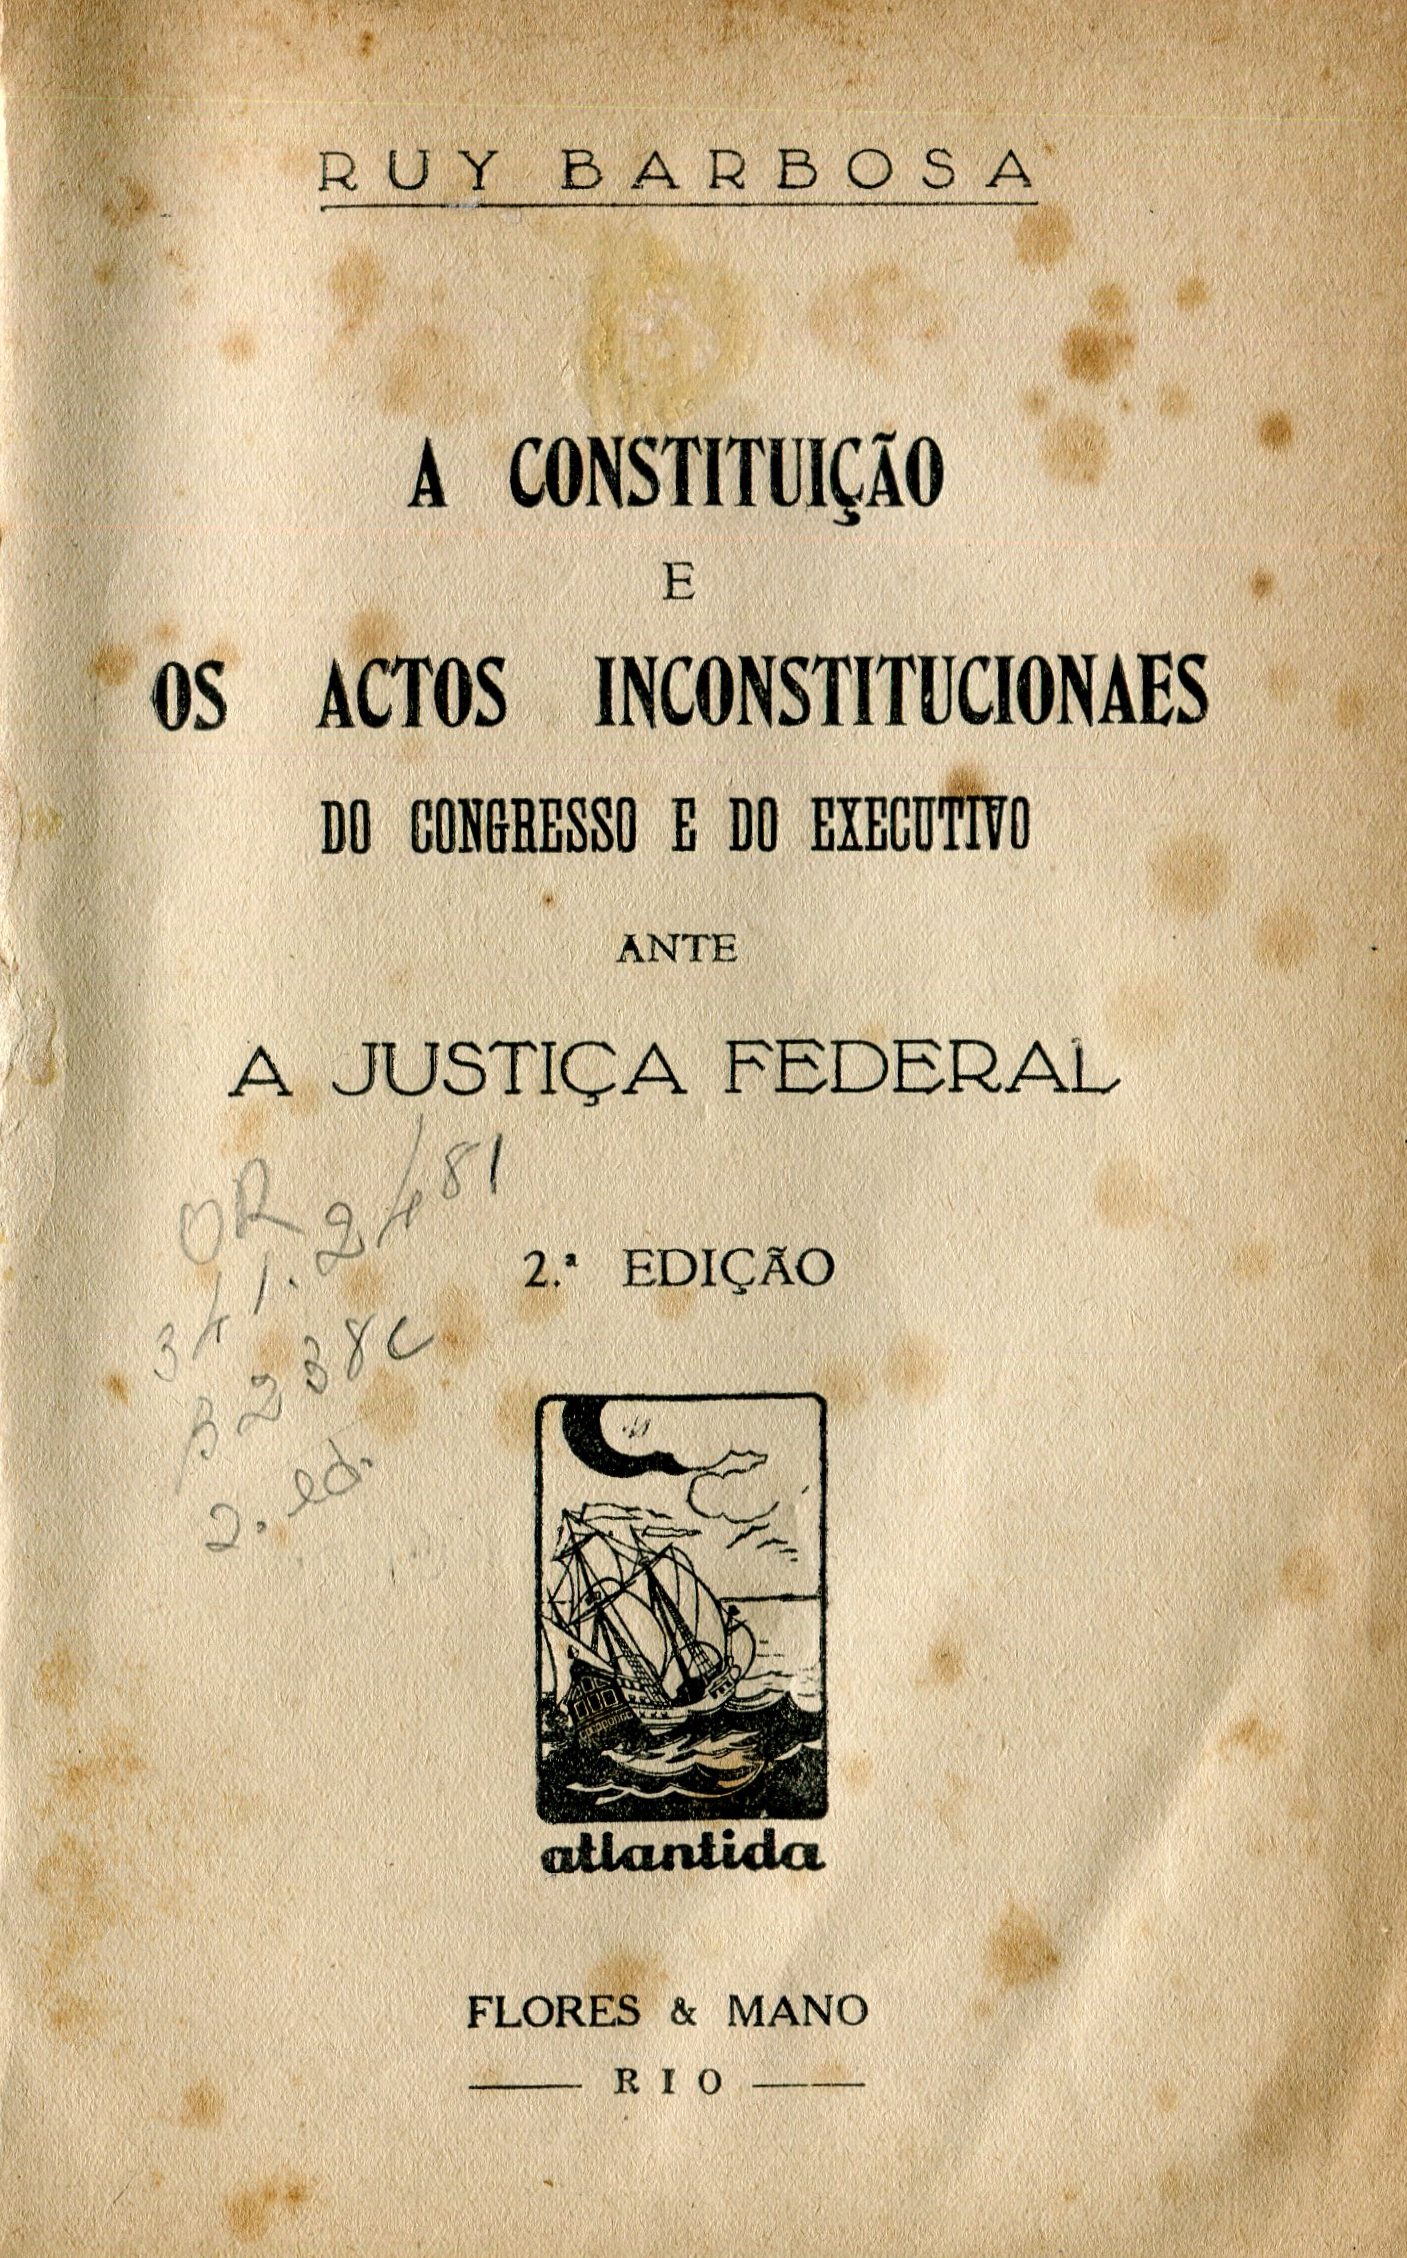 Capa do Livro A Constituição e os Actos Inconstitucionaes do Congresso e do Executivo Ante a Justiça Federal - (341.2481)